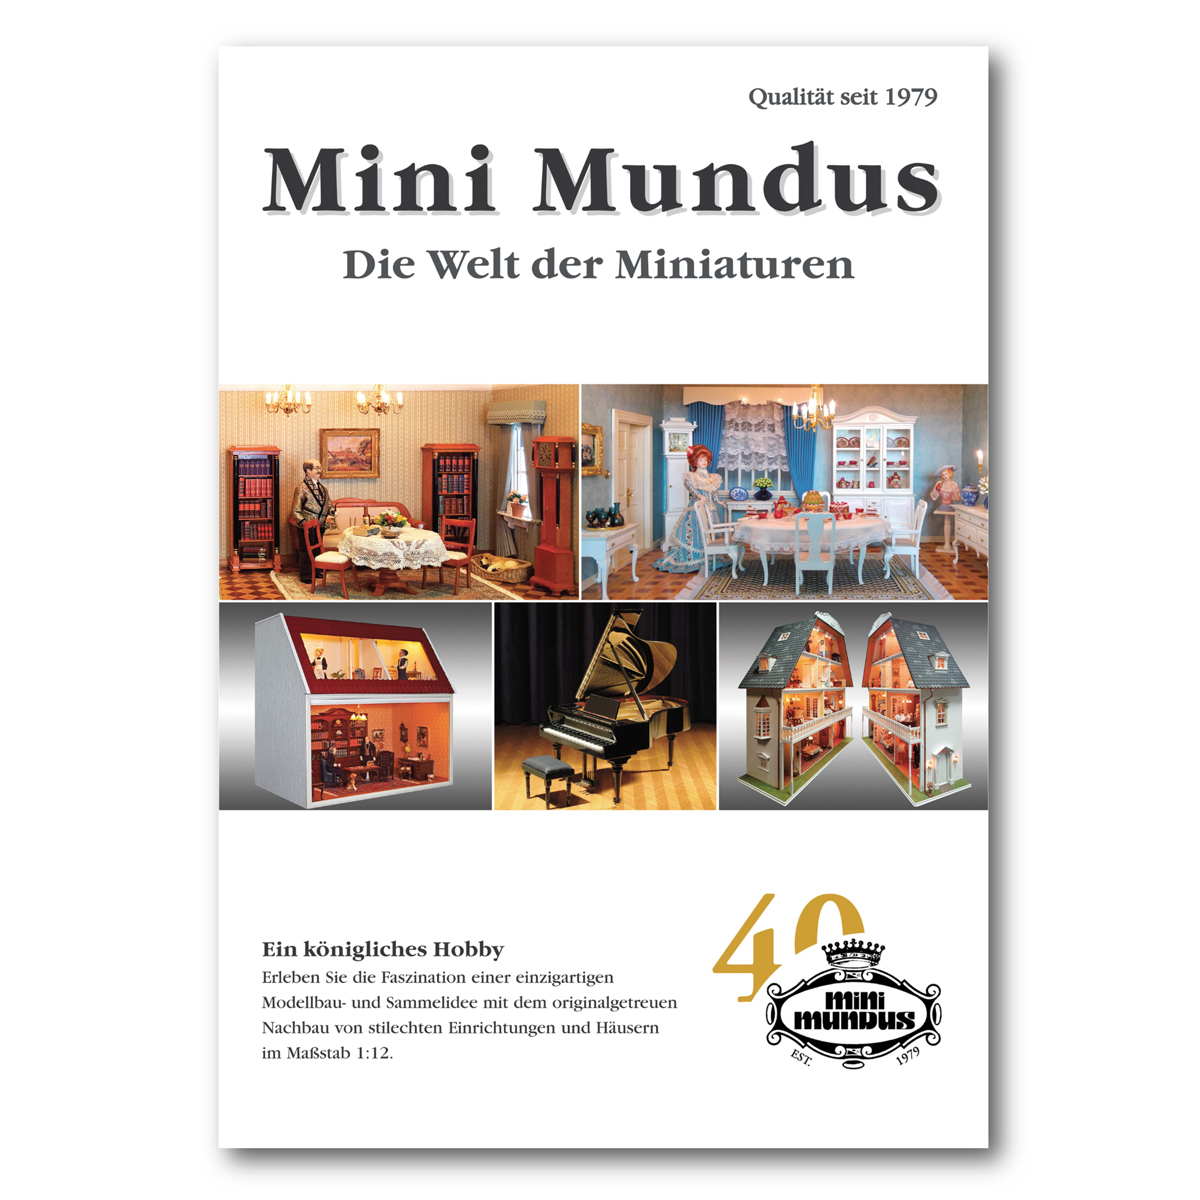 Mini Mundus Katalog